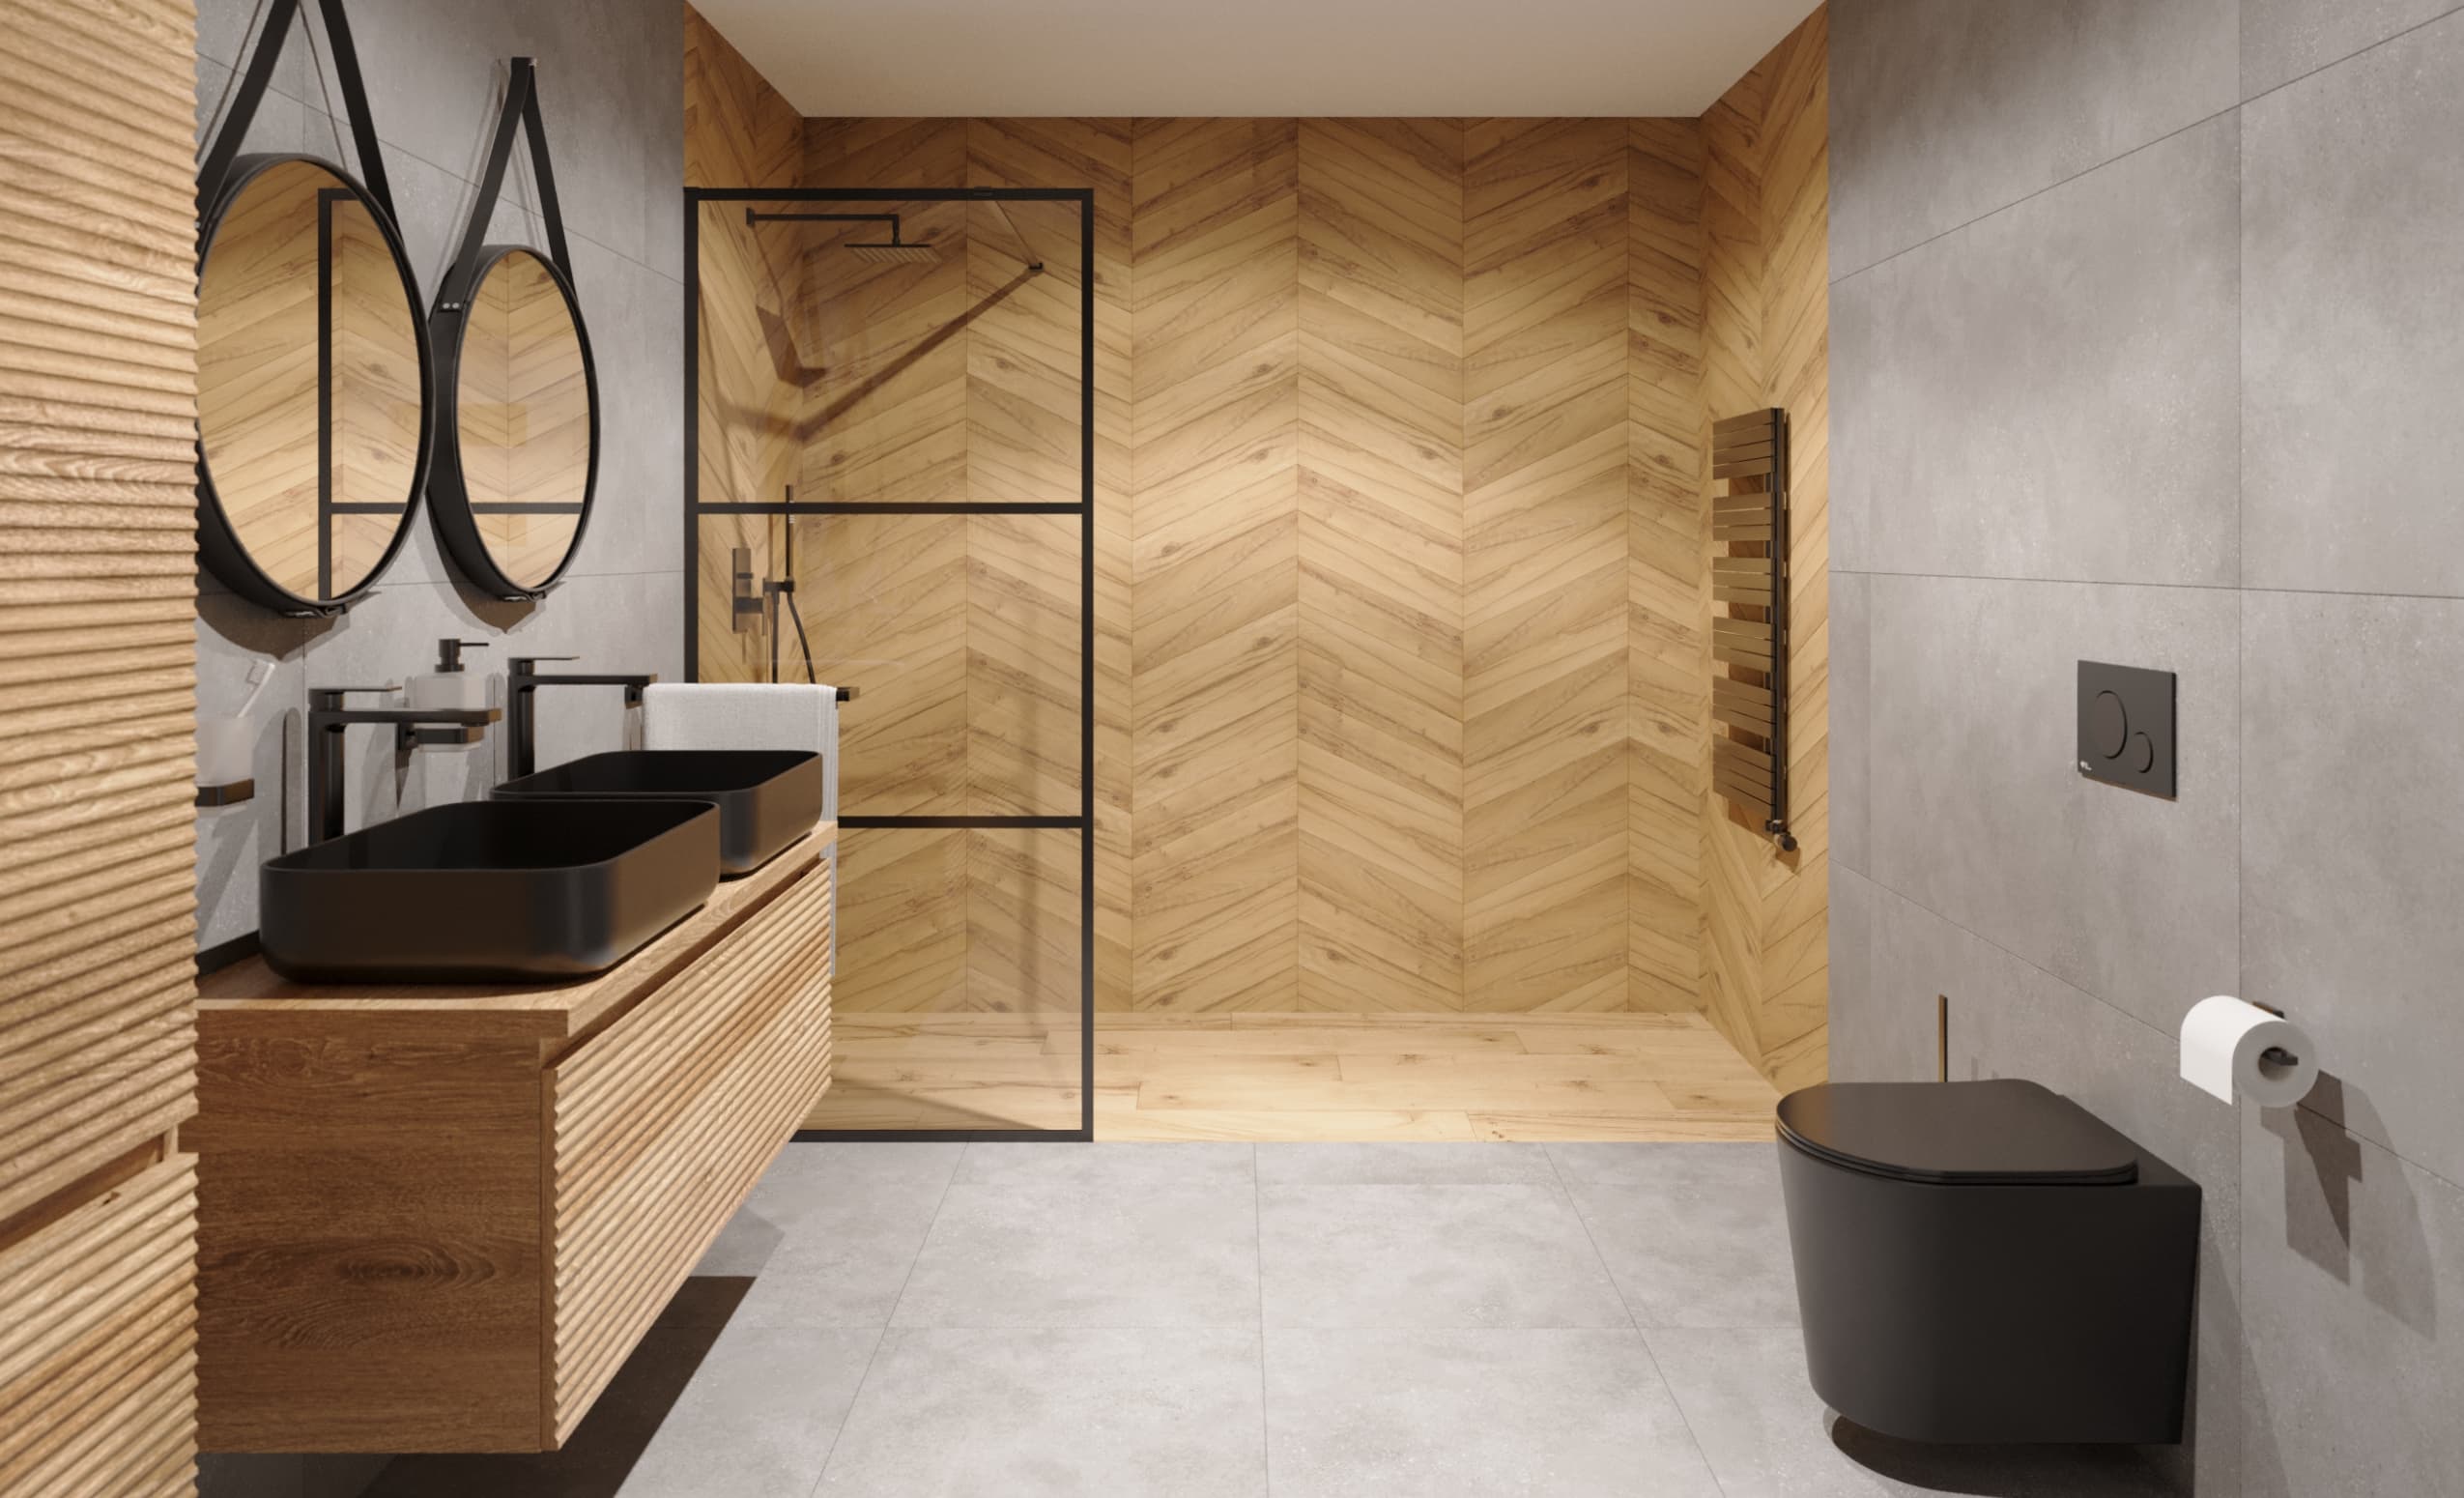 SIKO-koupelna-v-imitaci-betonu-d-eva-se-sprchovym-koutem-minimalisticky-styl-serie-Revival-001.jpg